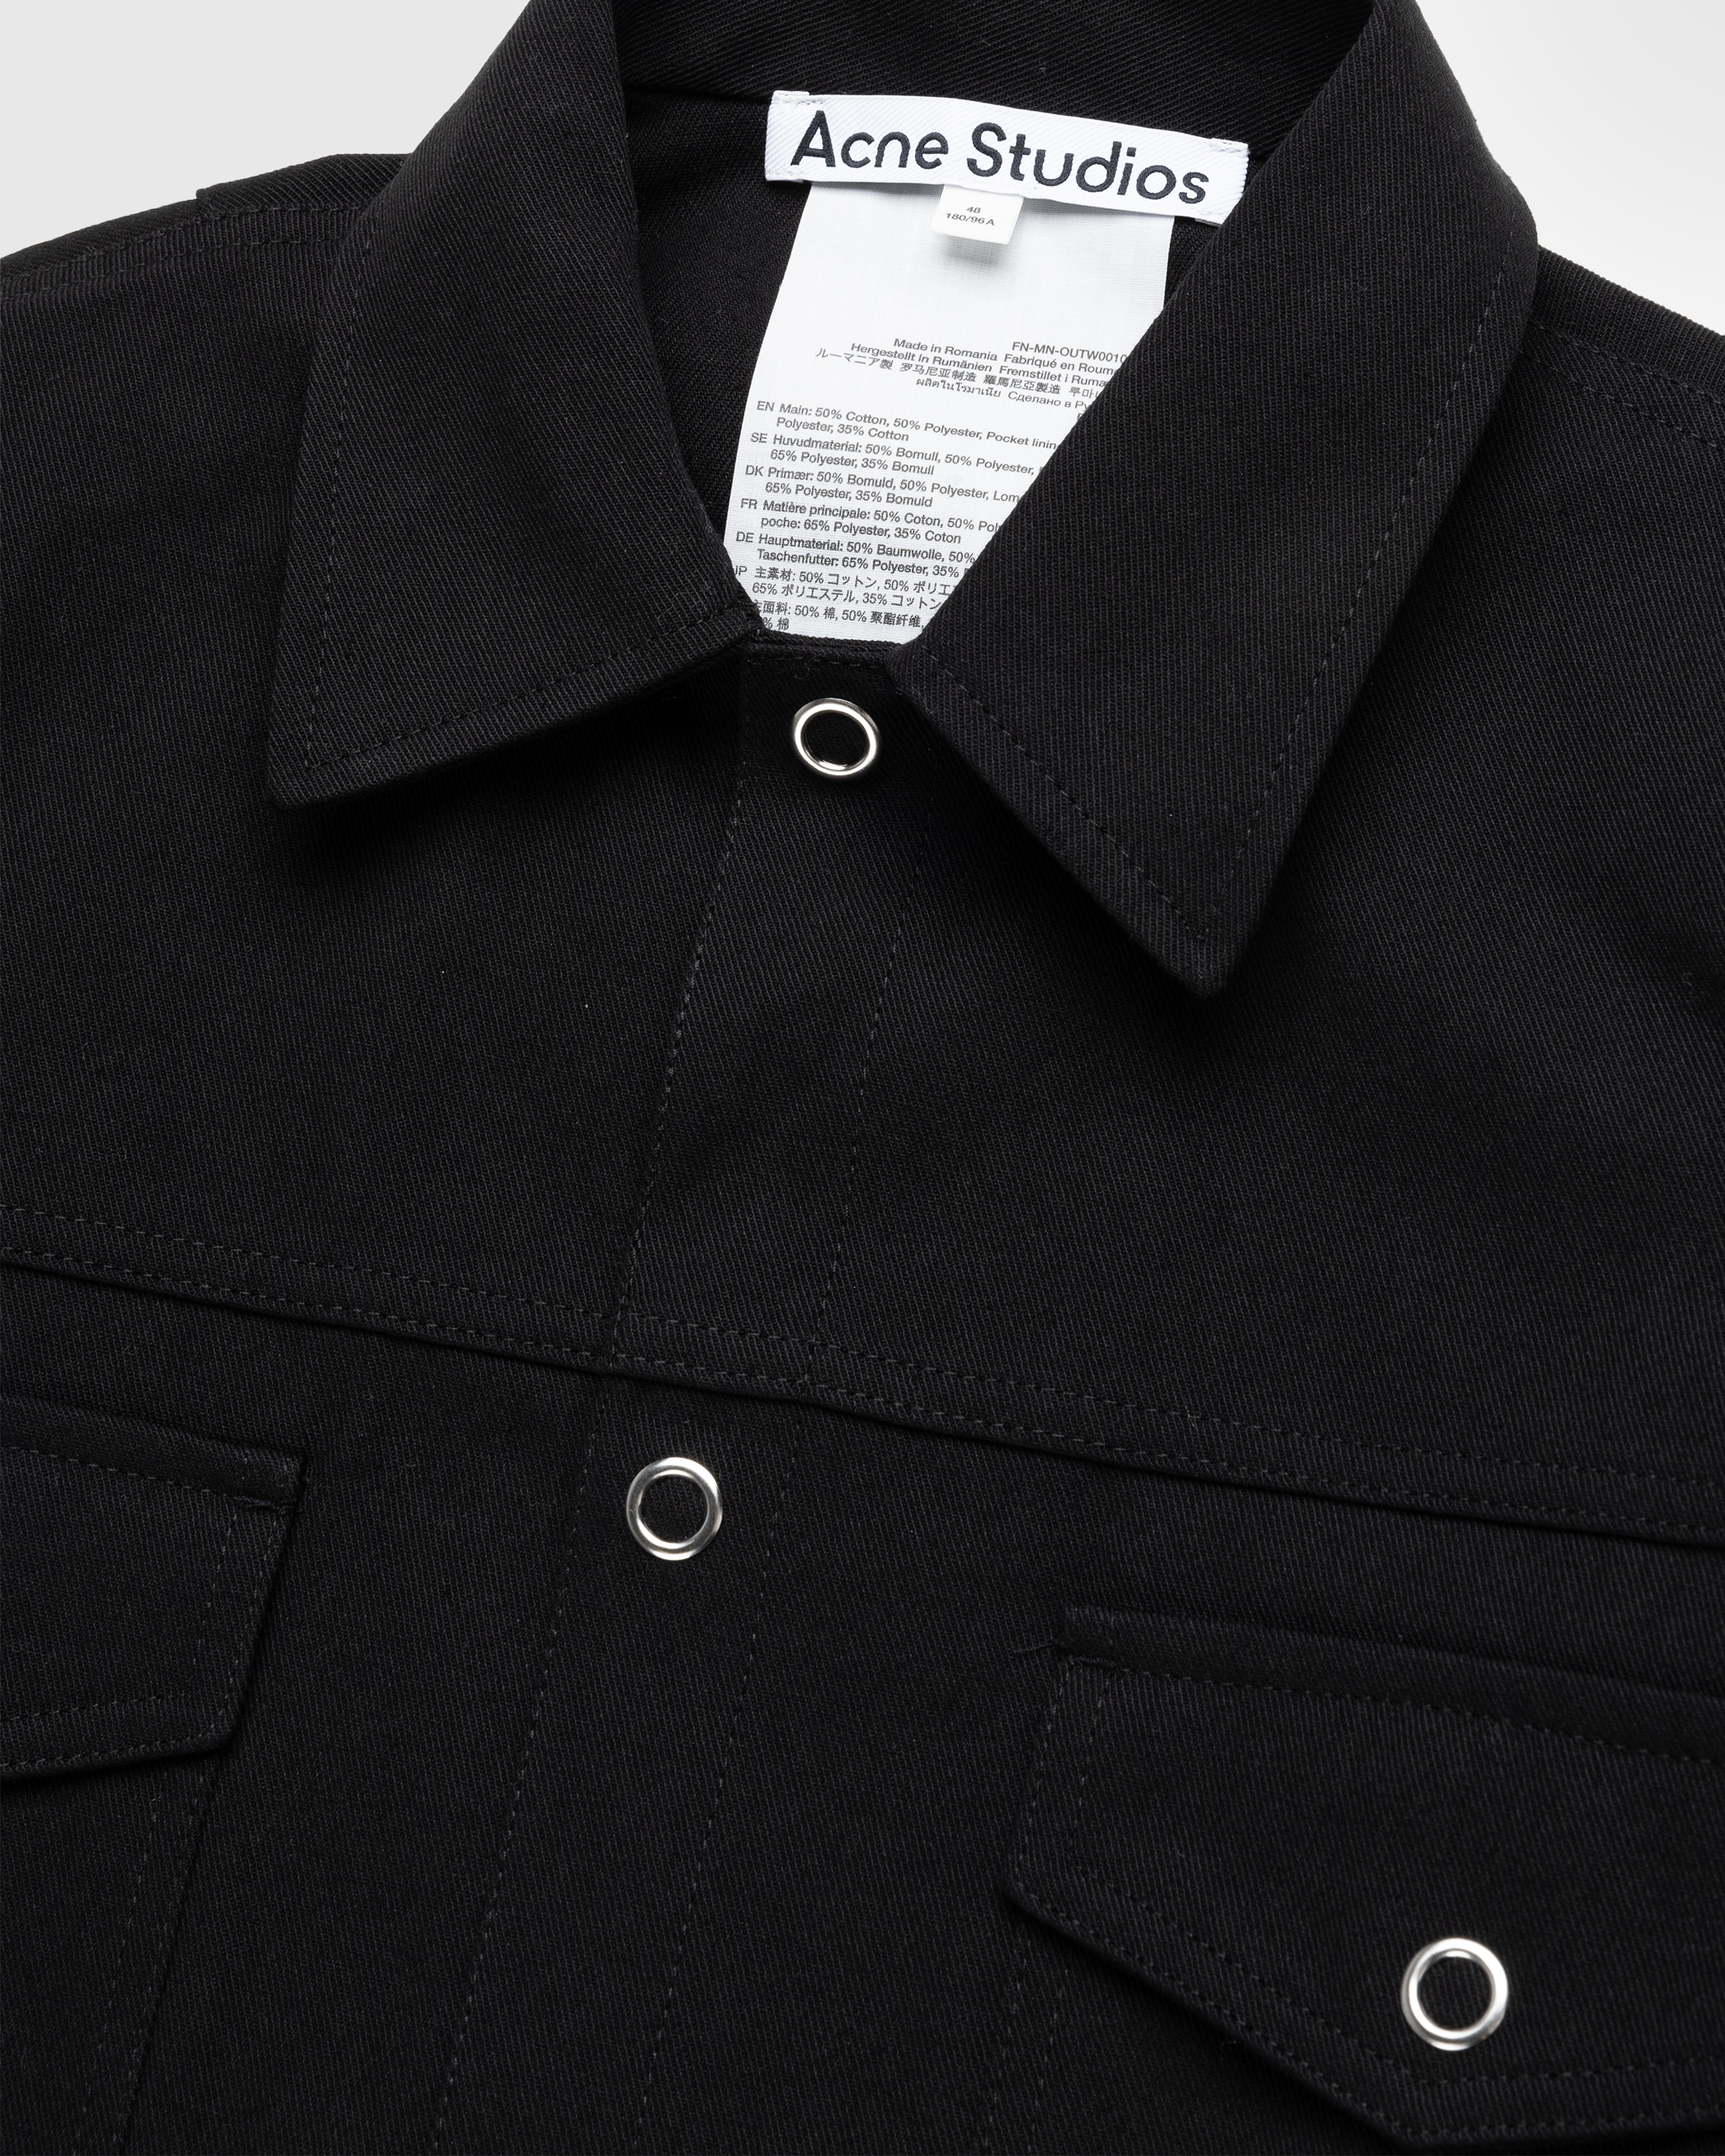 Acne Studios - Twill Jacket Black - Clothing - Black - Image 6